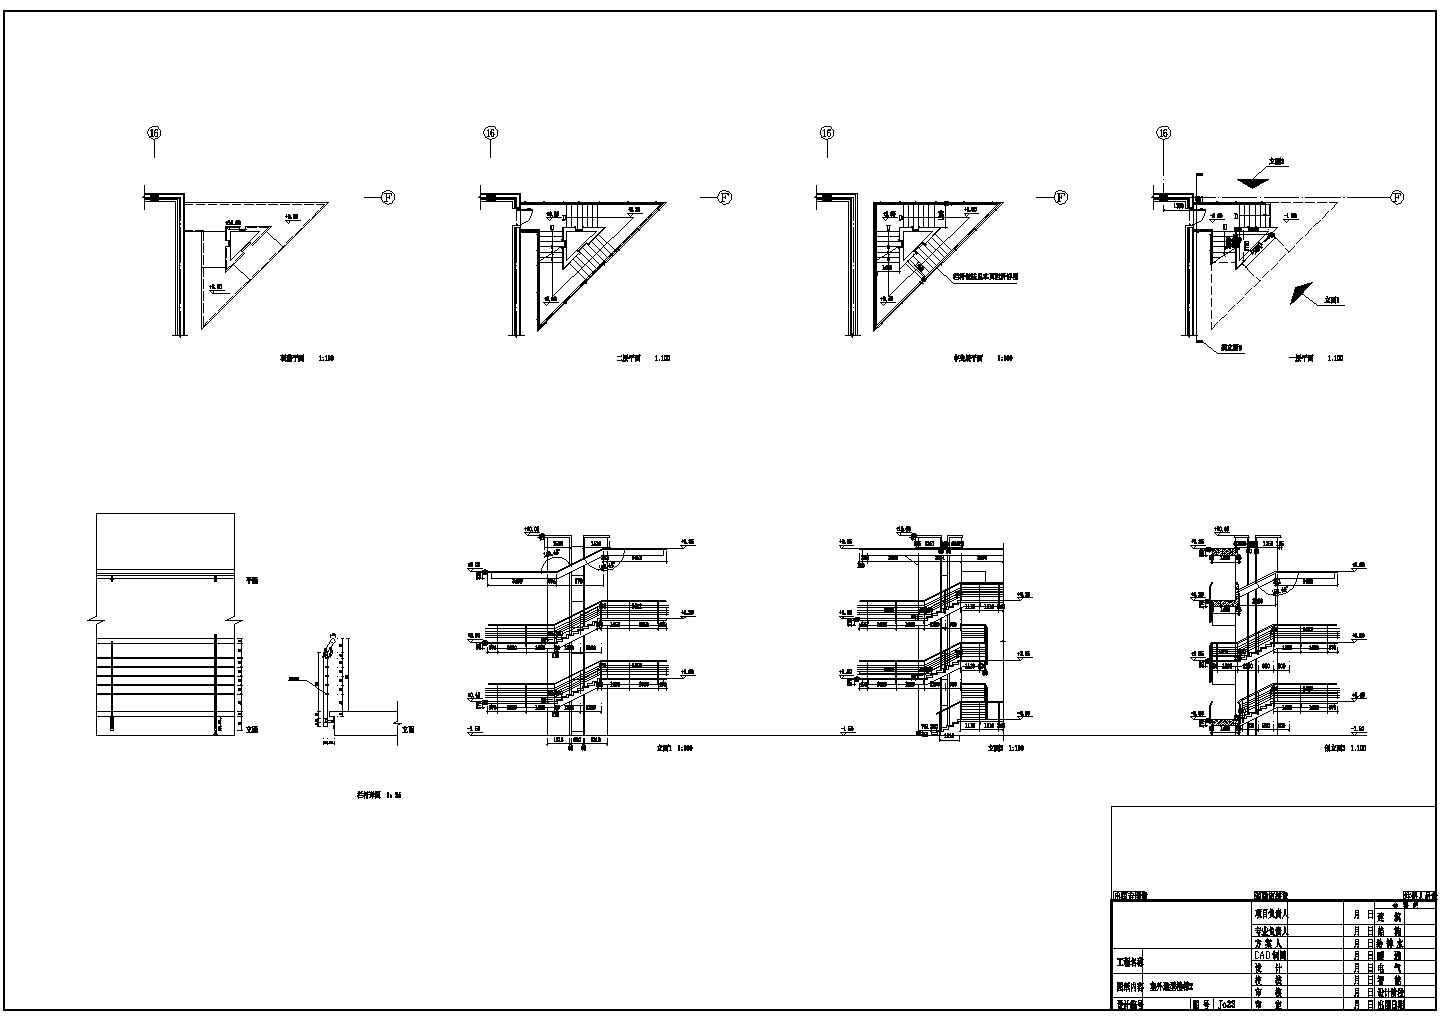 2+2夹层扇型博物馆扩大工程CAD建筑初步设计方案图-室外造型楼梯